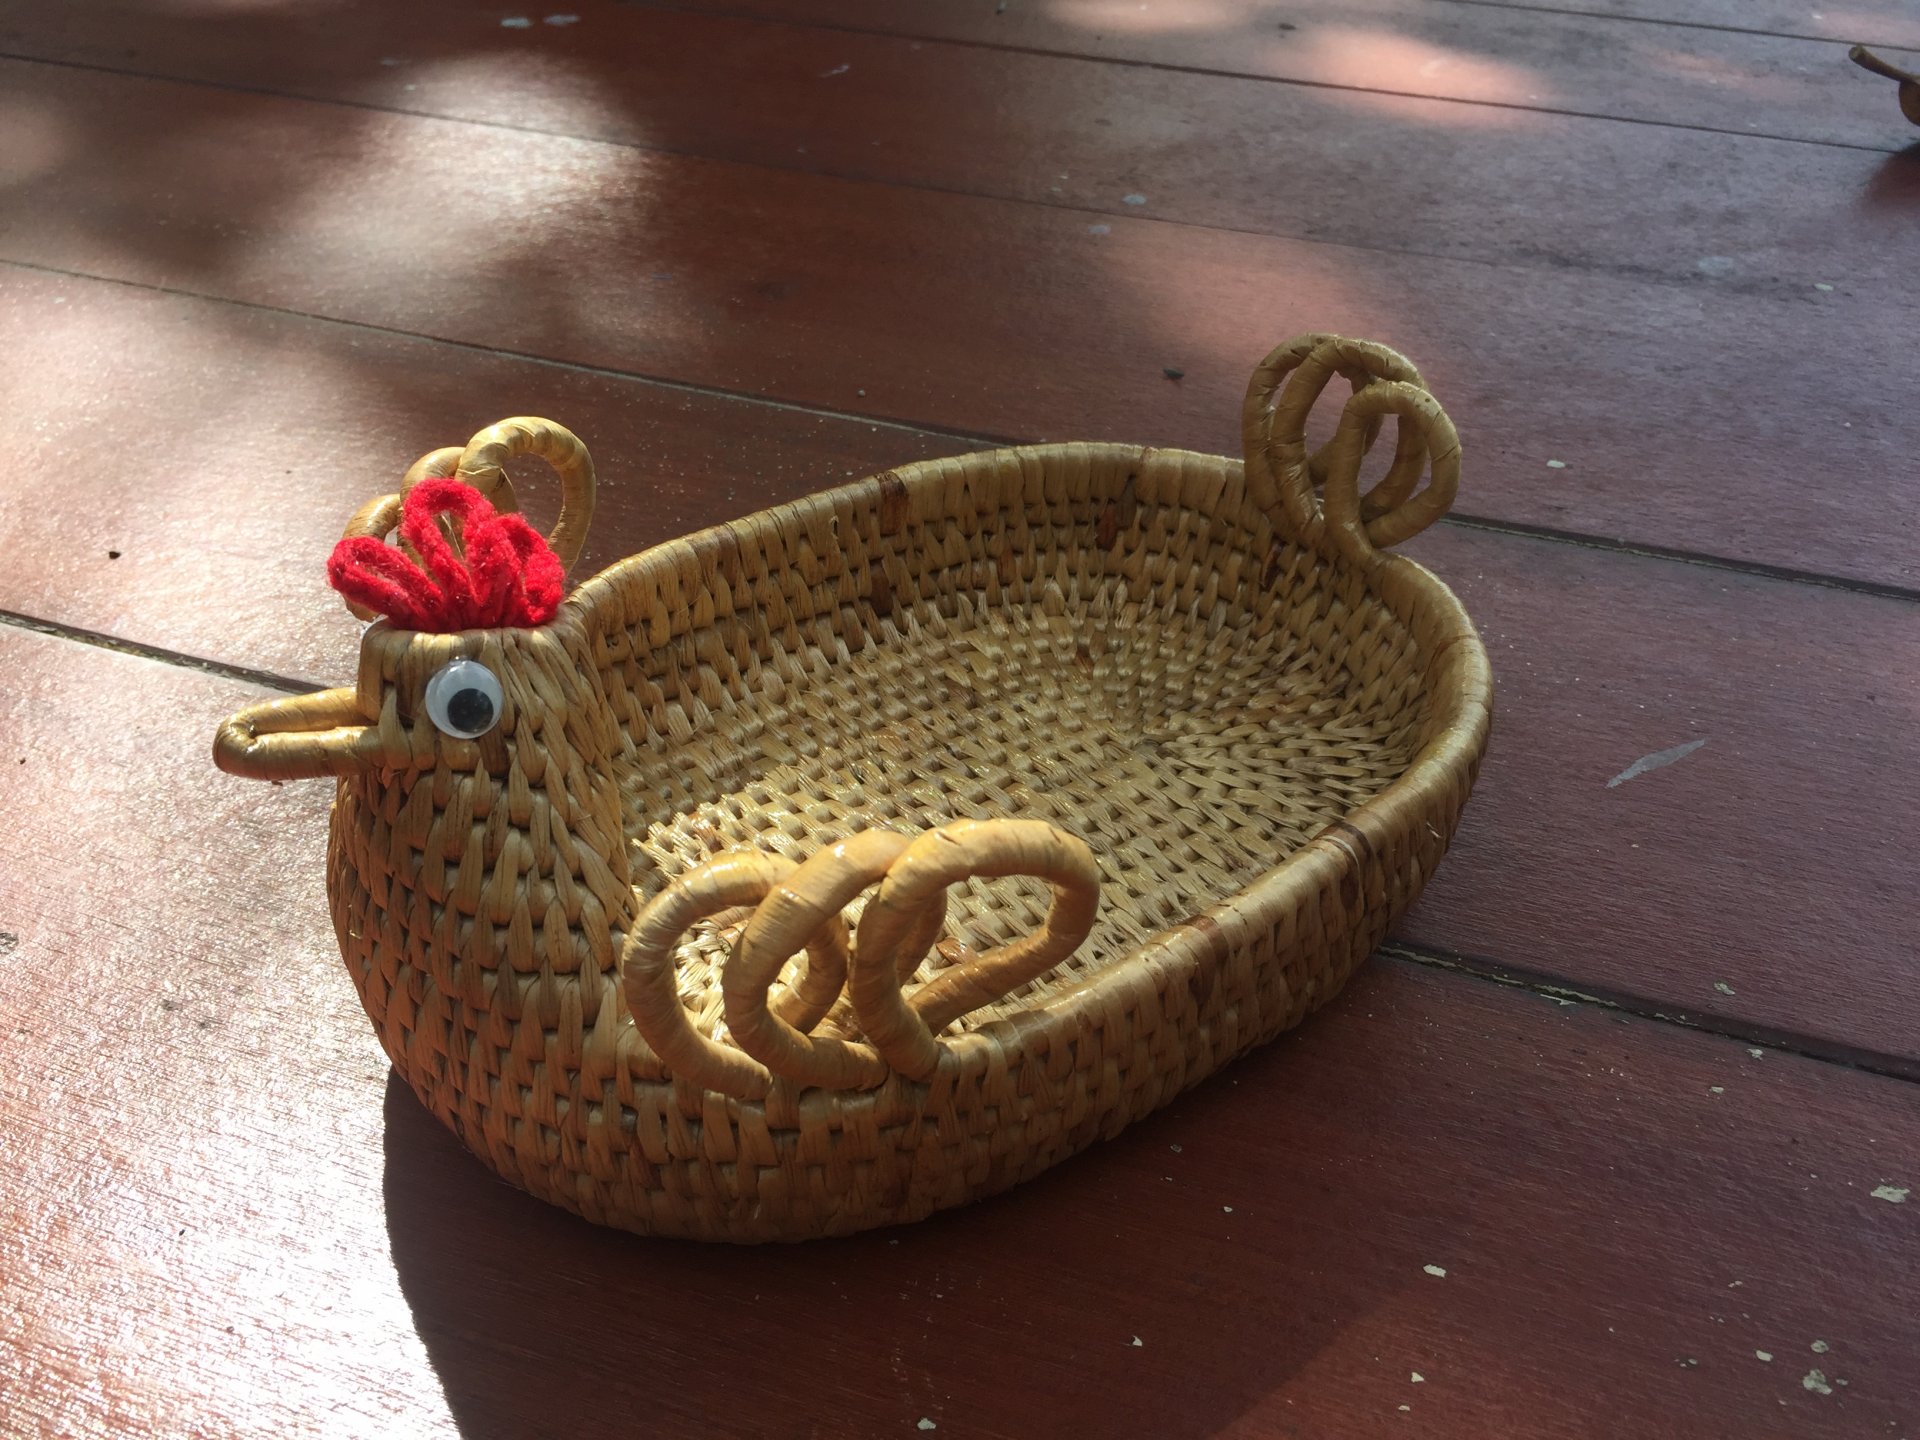 Water hyacinth wicker work - chicken basket 6 inches